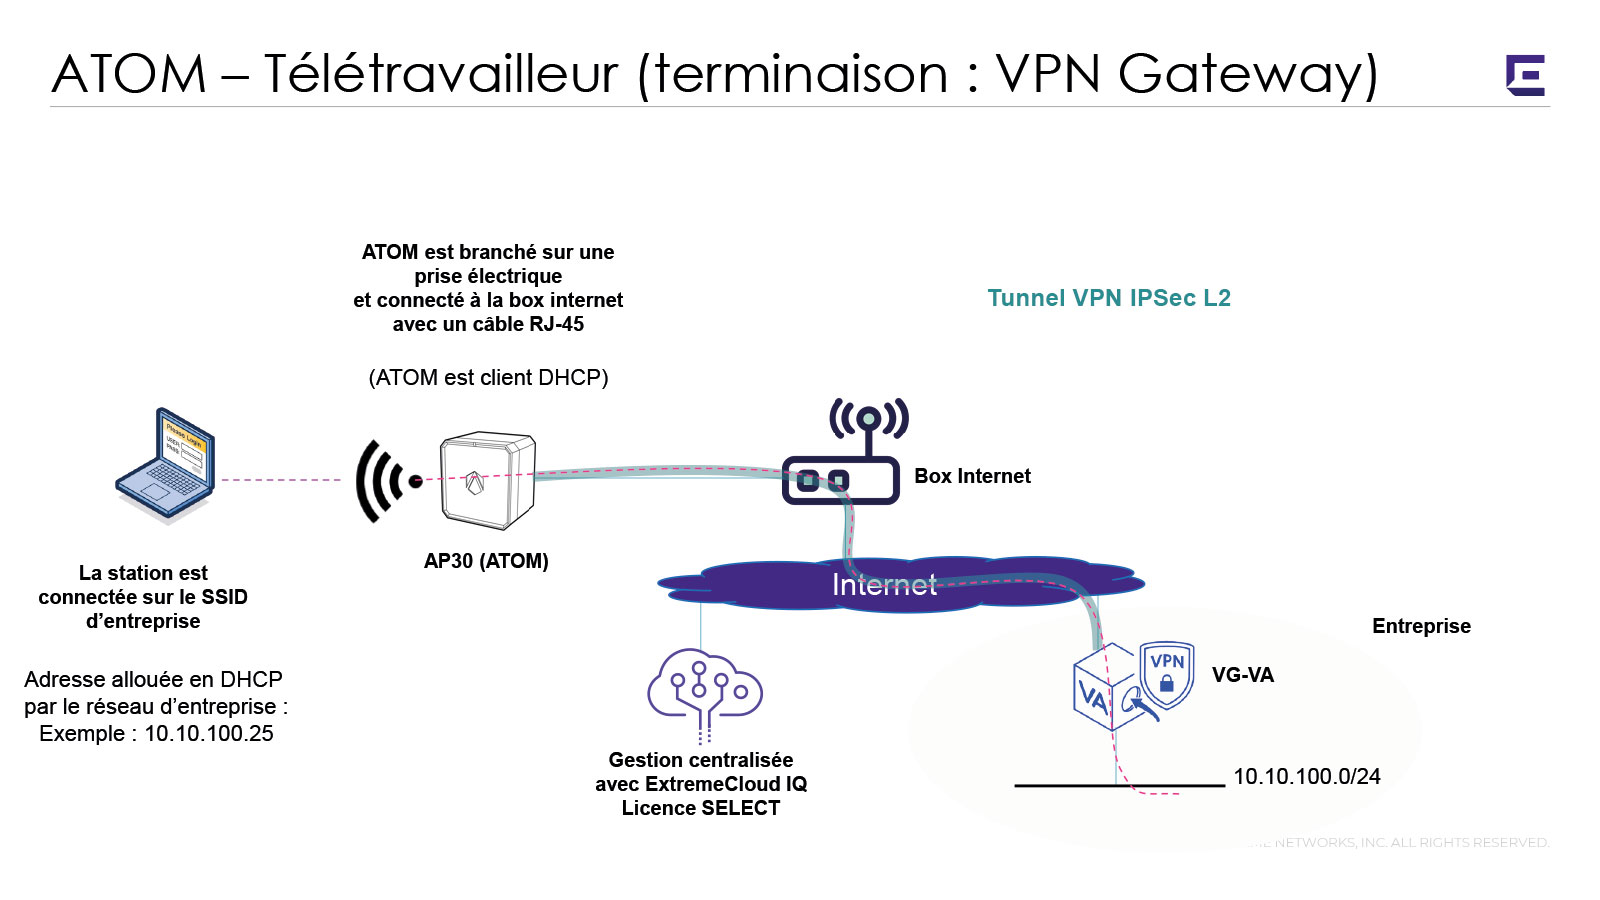   Collaboration   ATOM VPN Télétravailleur